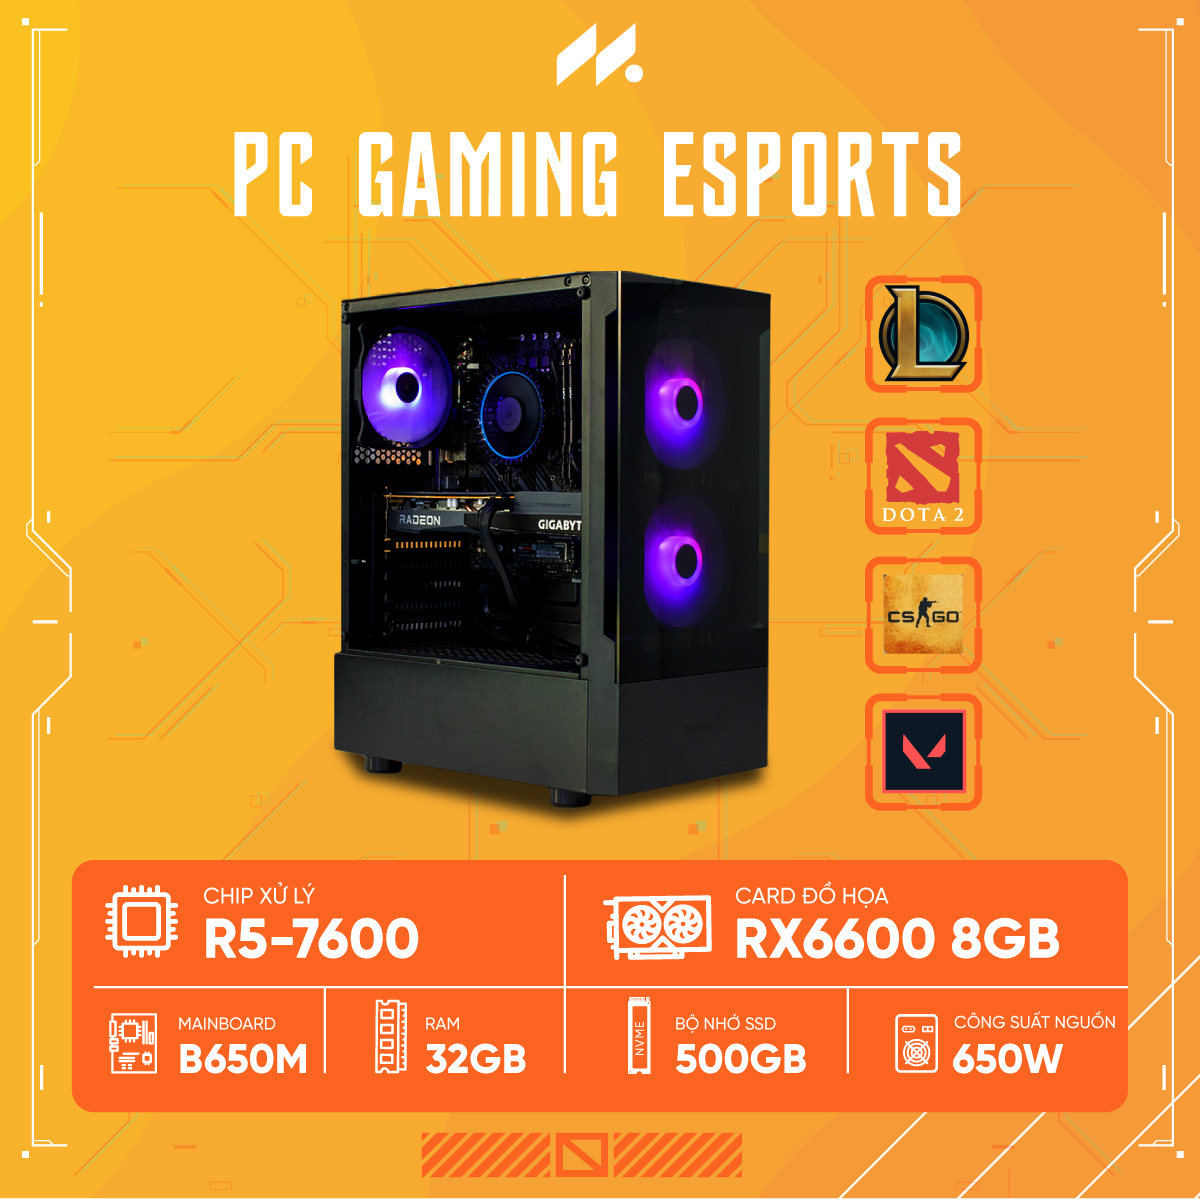 PC Gaming Esports R5-6600 (Ryzen 5 6600, RX 6600 8G, Ram 32GB, SSD 500GB, 650W)